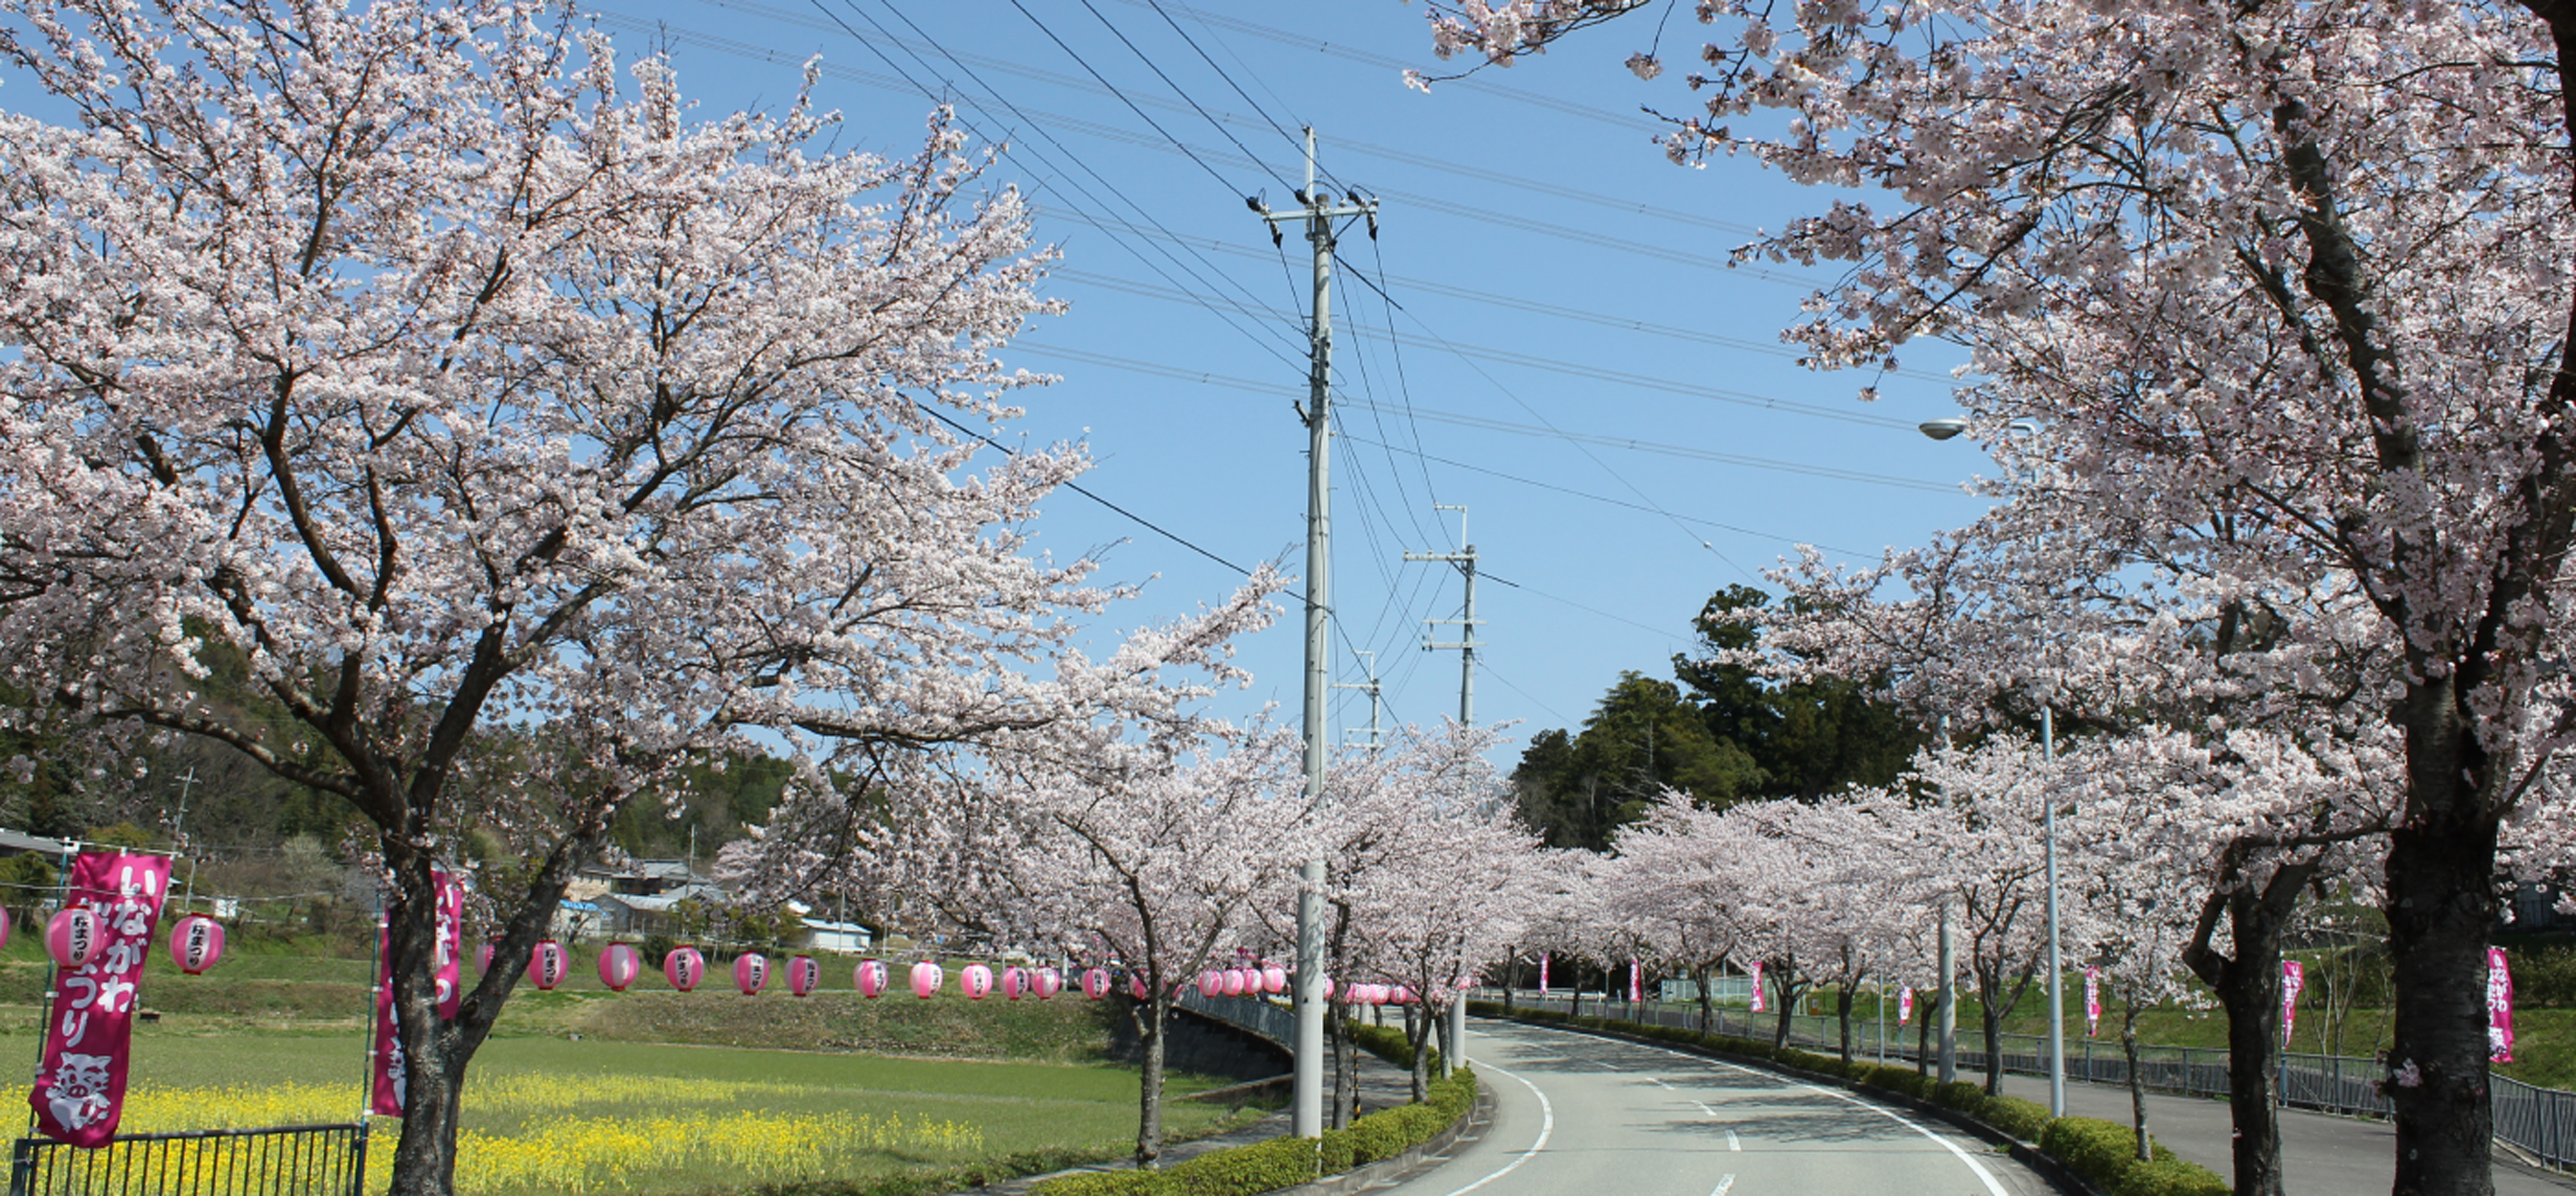 猪名川町は兵庫県の緑豊かな里山の自然と歴史や文化を楽しめる地域です